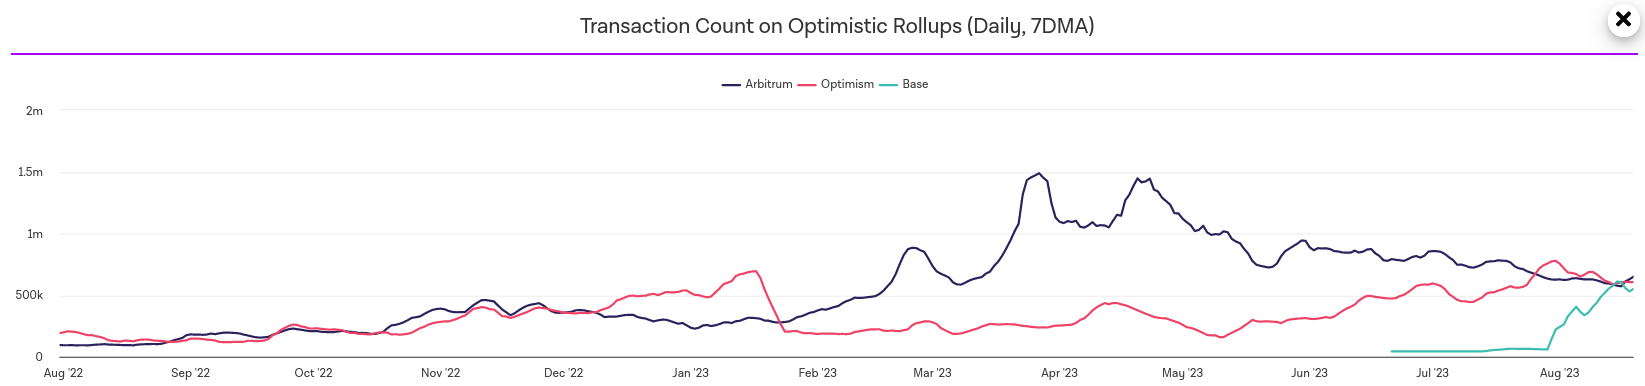 la moyenne mobile du nombre de transactions quotidiennes sur Base a momentanément dépassé ses concurrents Optimism et Arbitrum